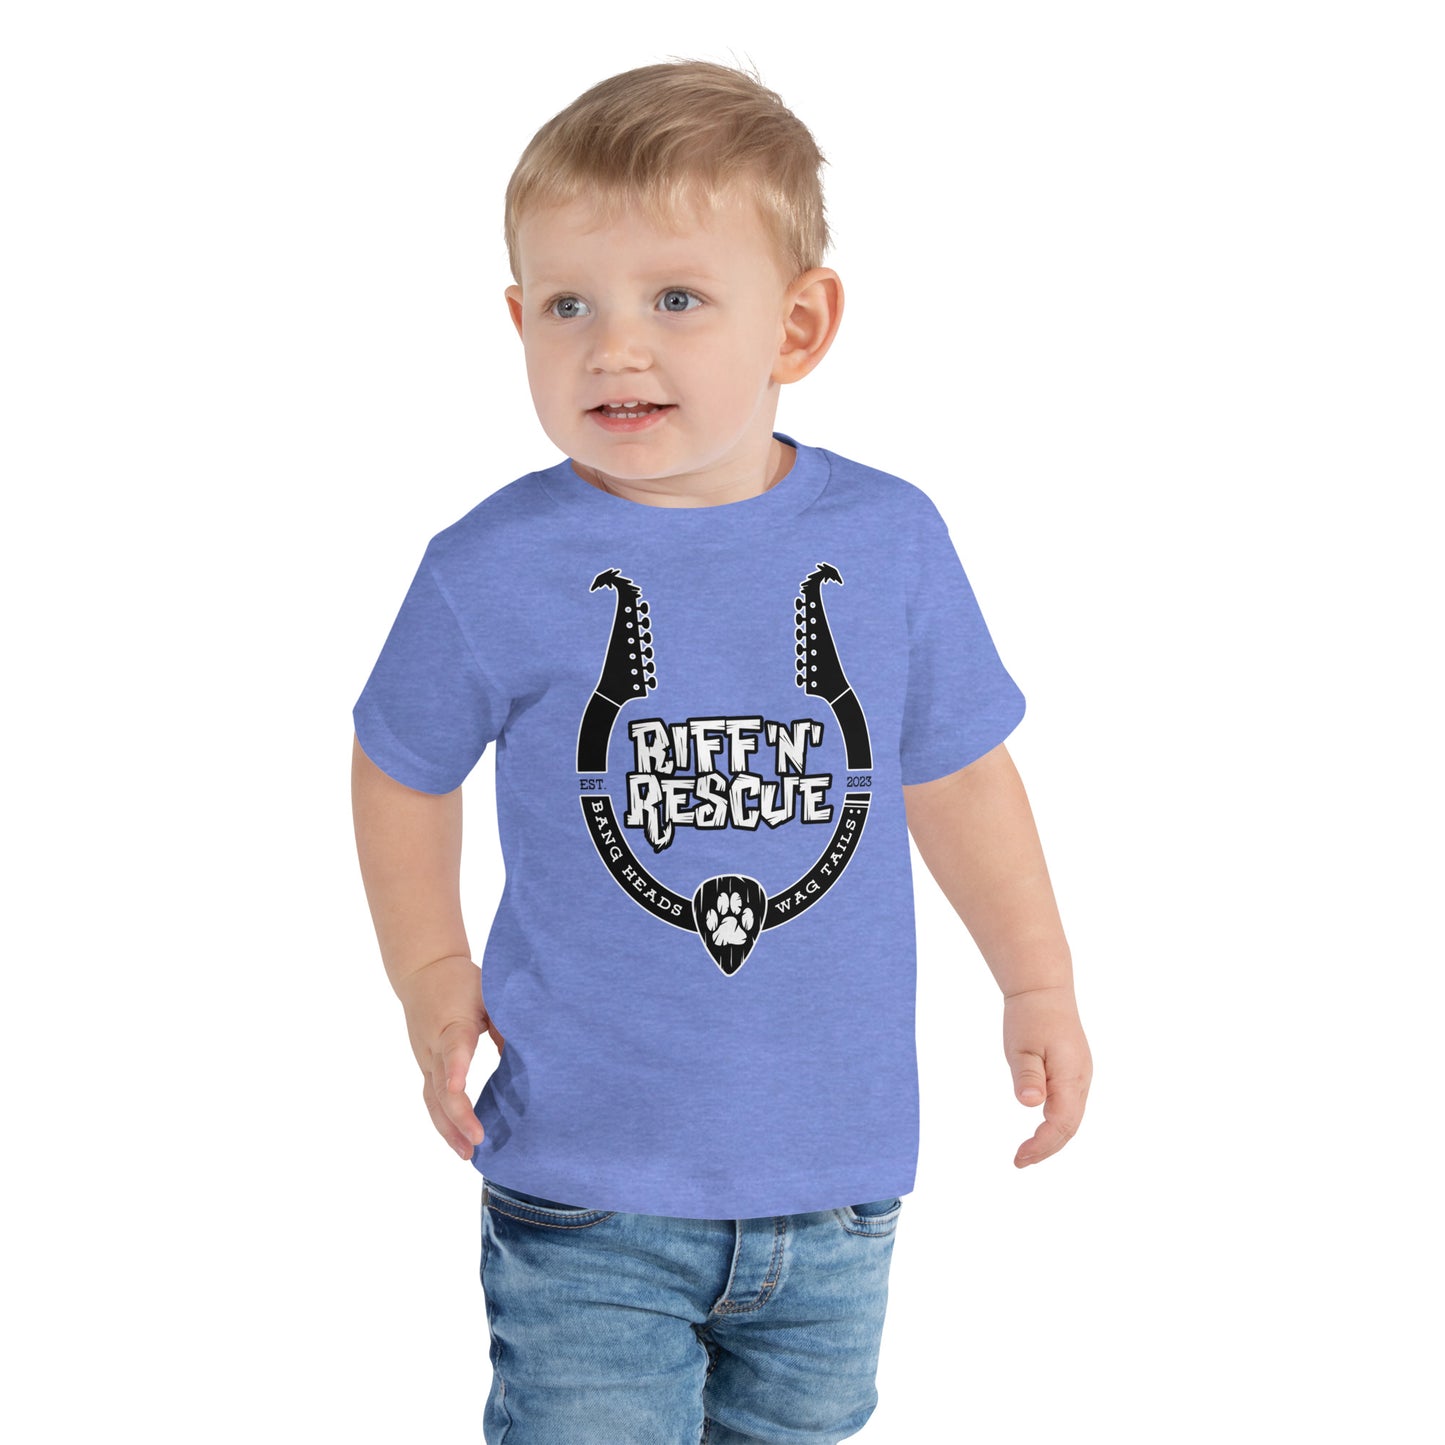 Headstock Horns Toddler T-Shirt